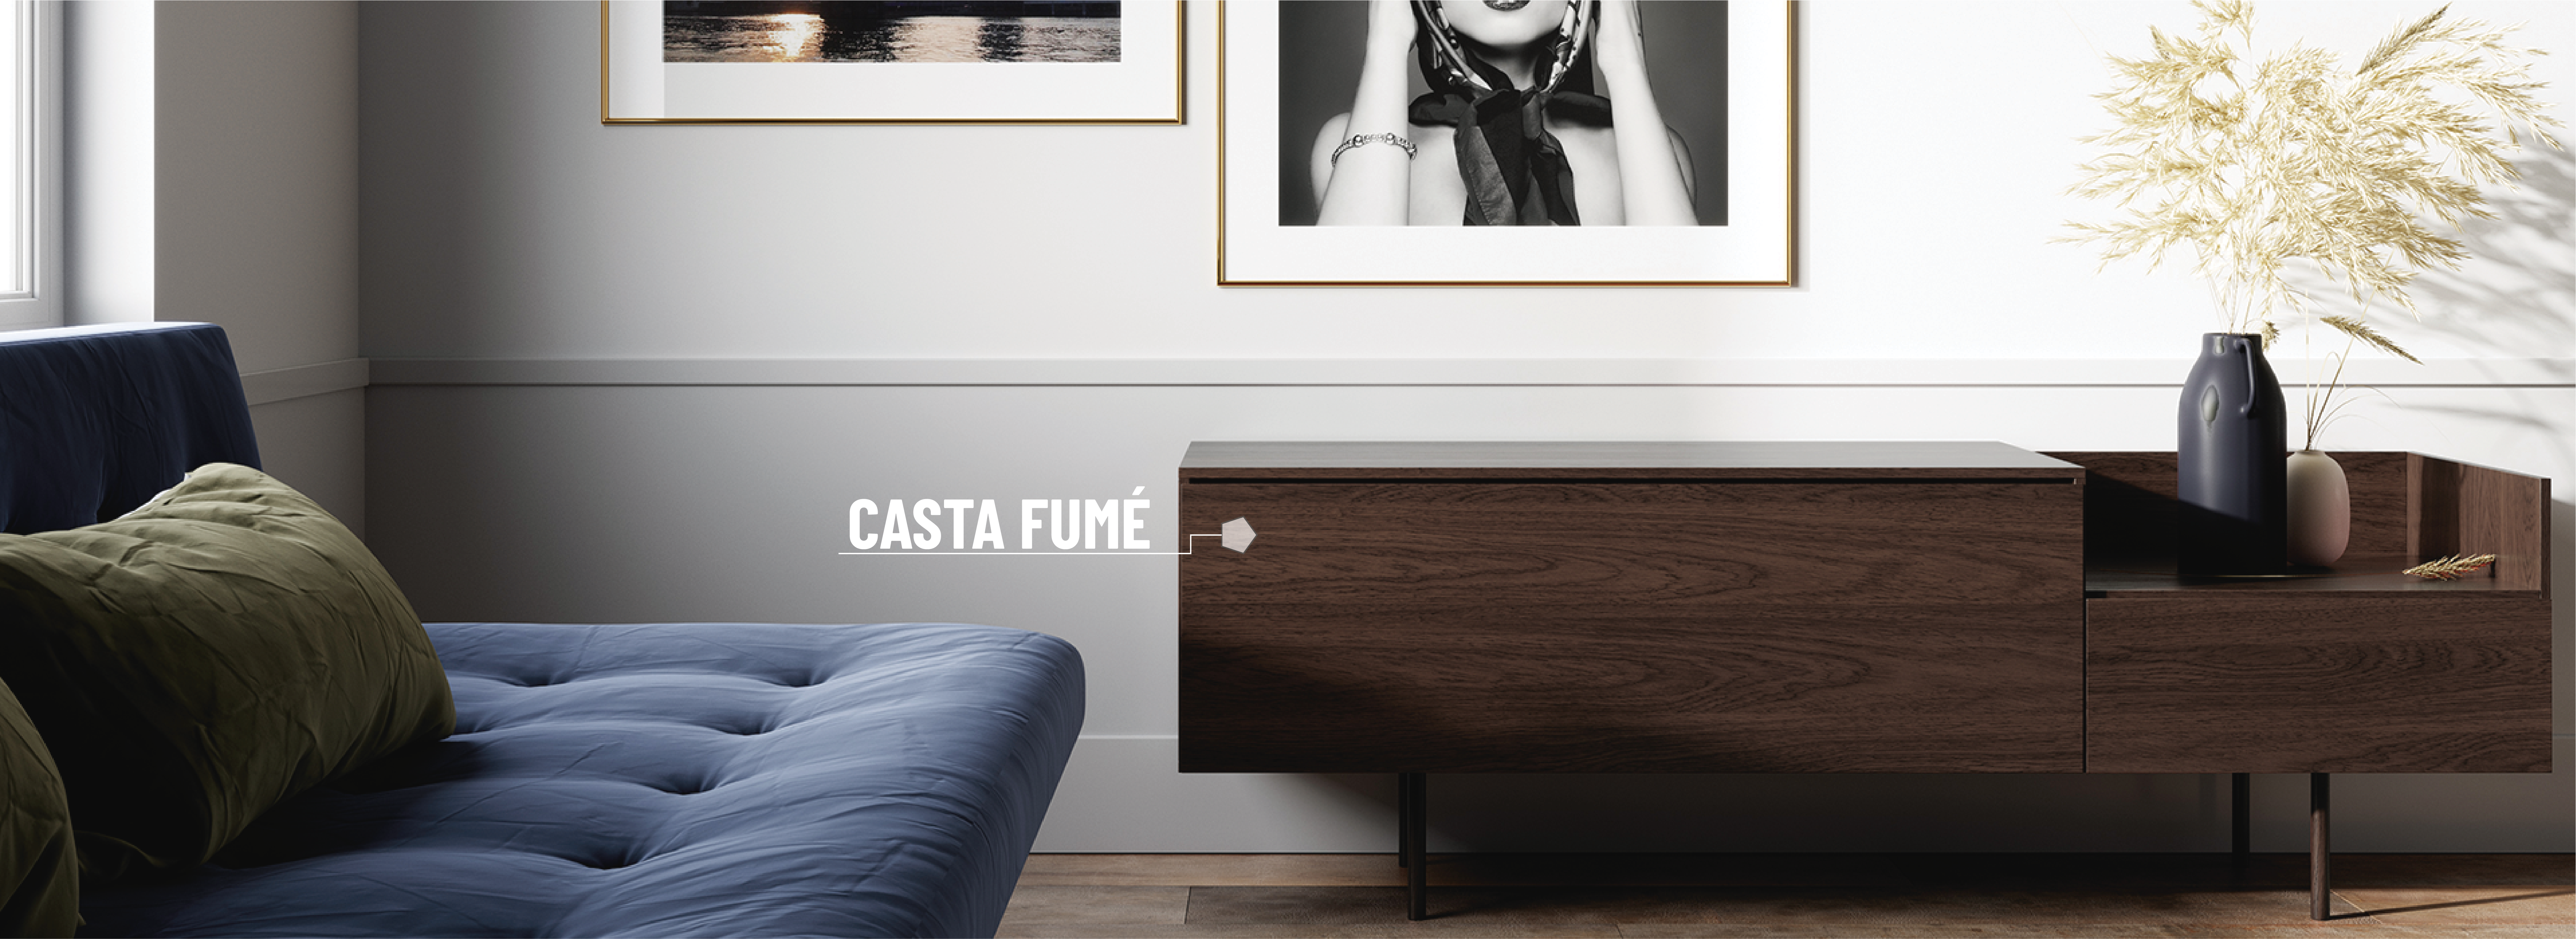 Casta Fumé Design